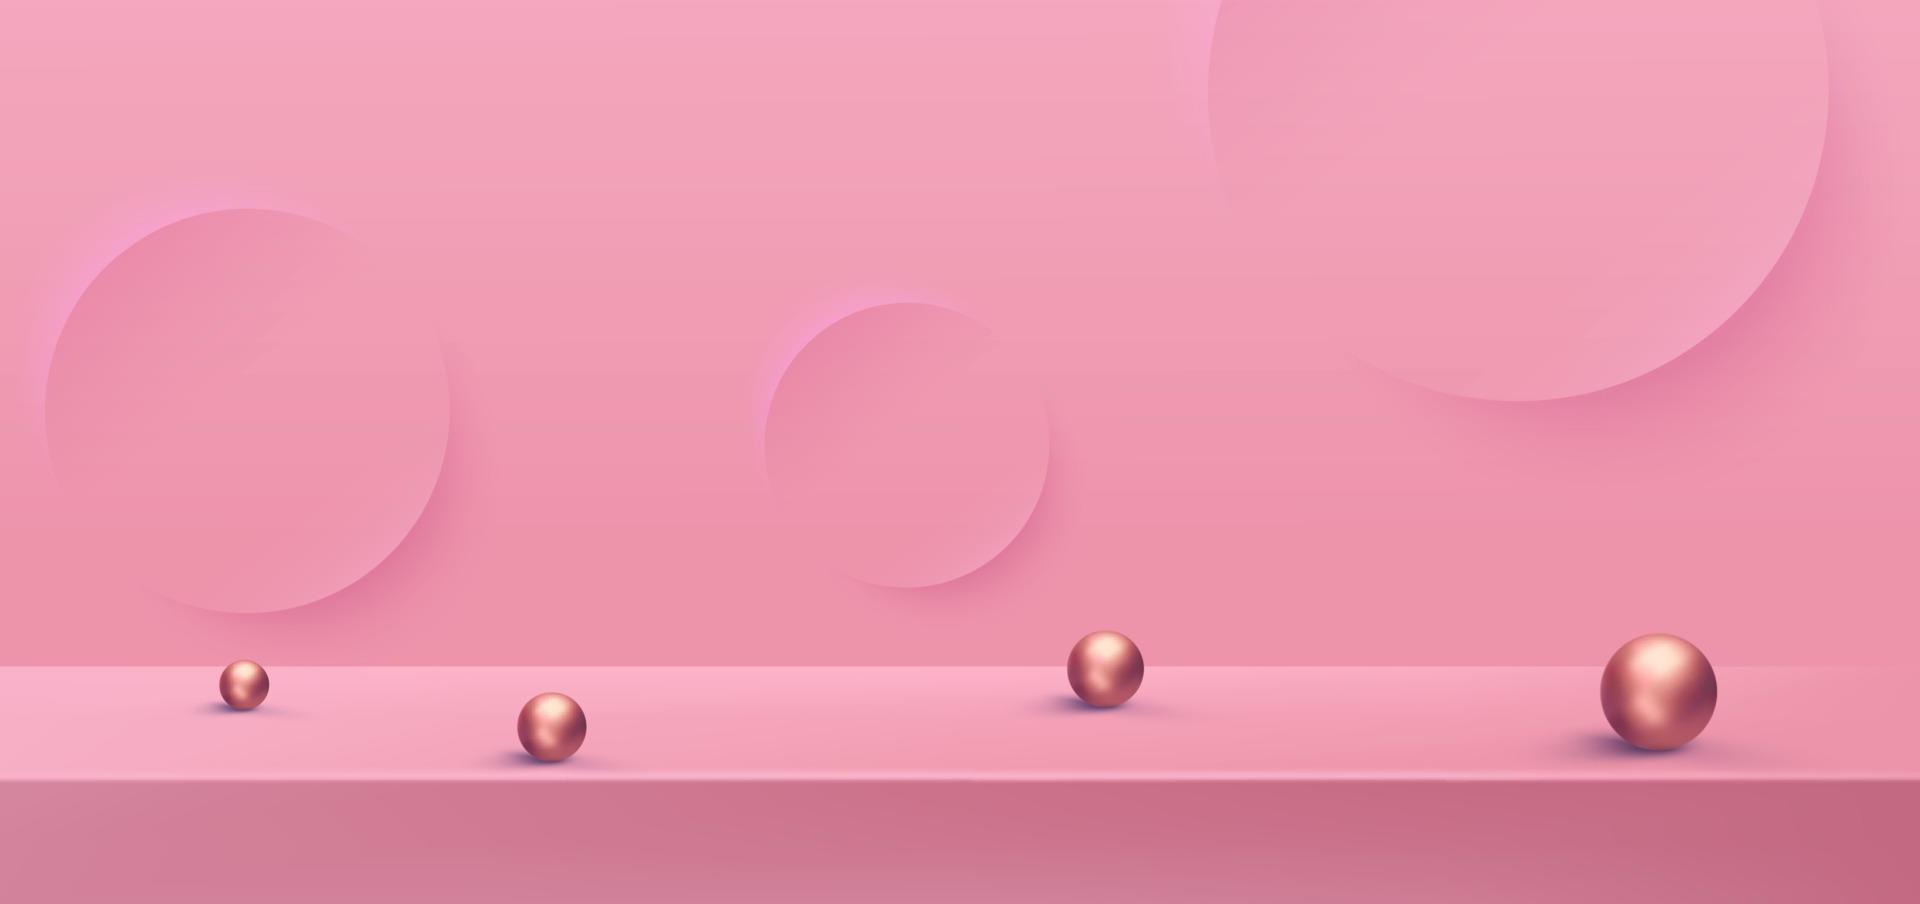 Concetto di vettore di sfondo podio rosa 3d, adatto per vari design di sfondo, modello di san valentino, banner, poster